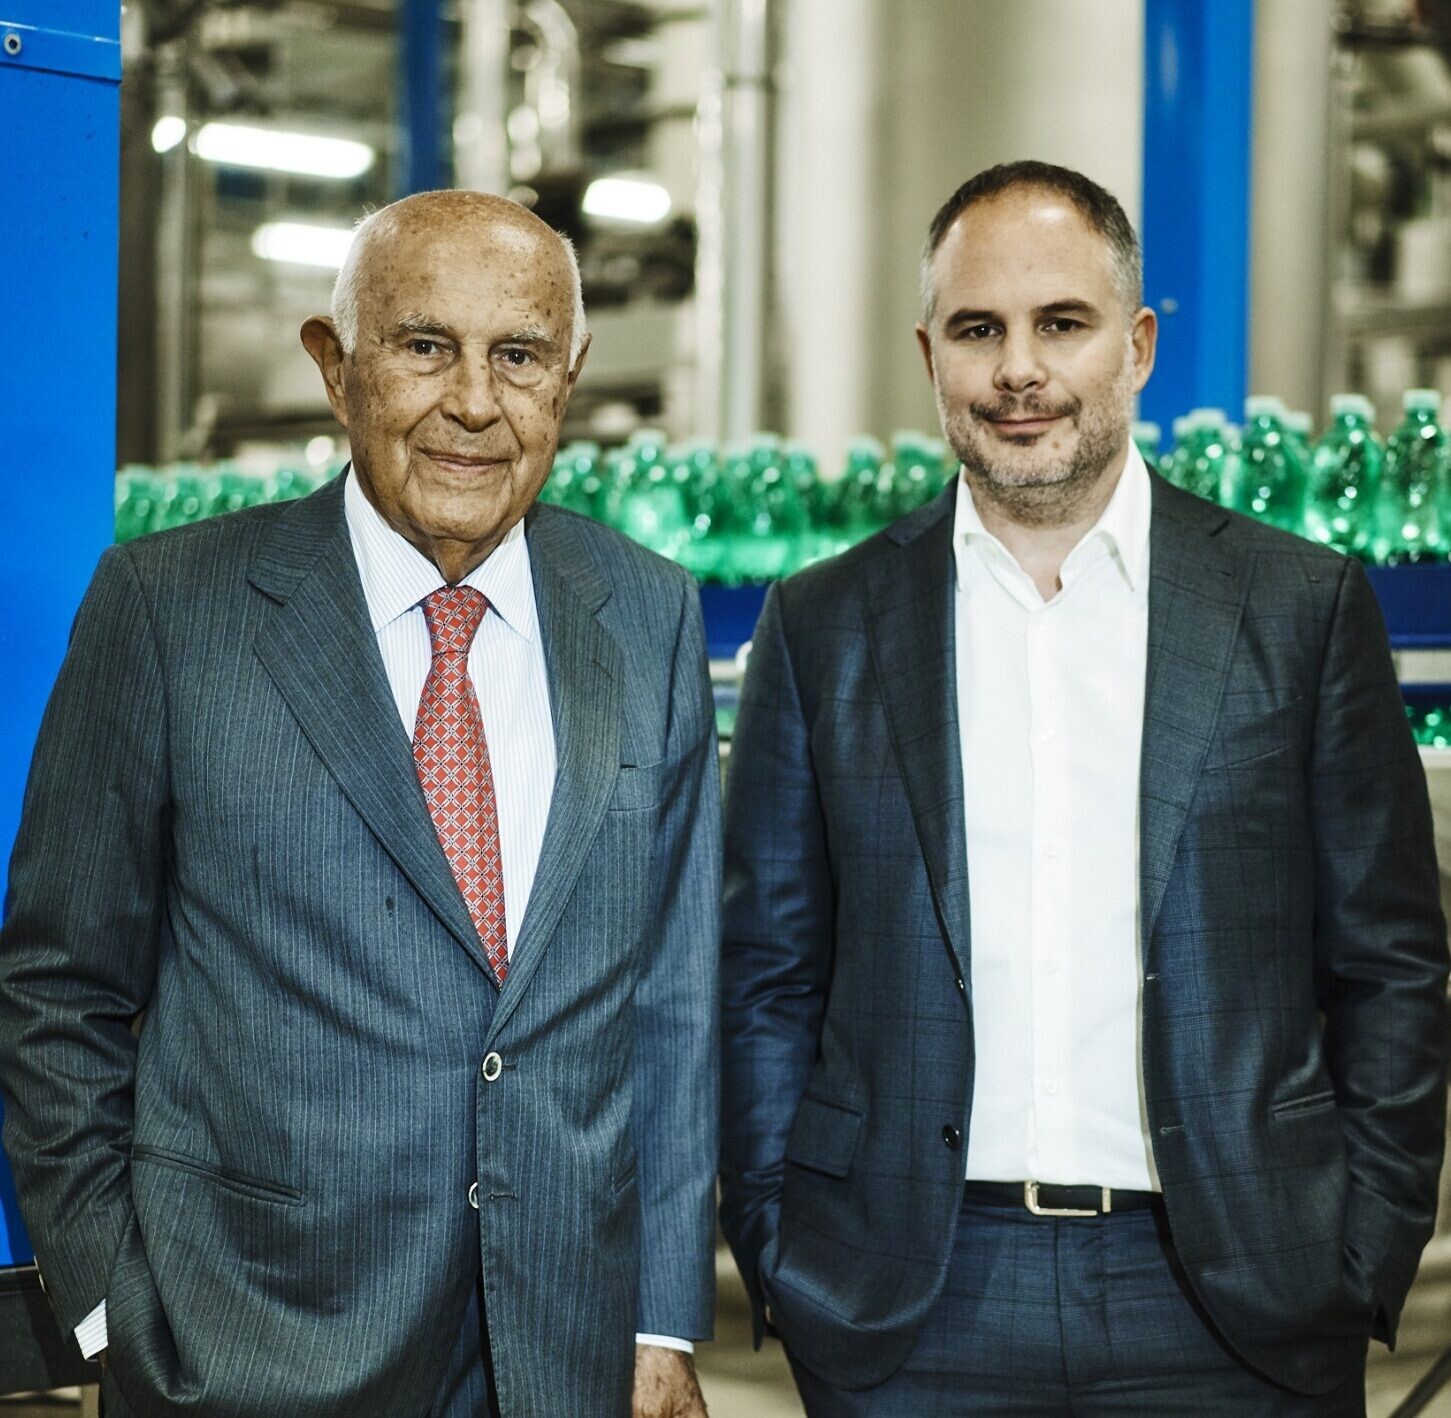 Mattoni se stane výhradním prodejcem nápojů od Pepsi v Rakousku